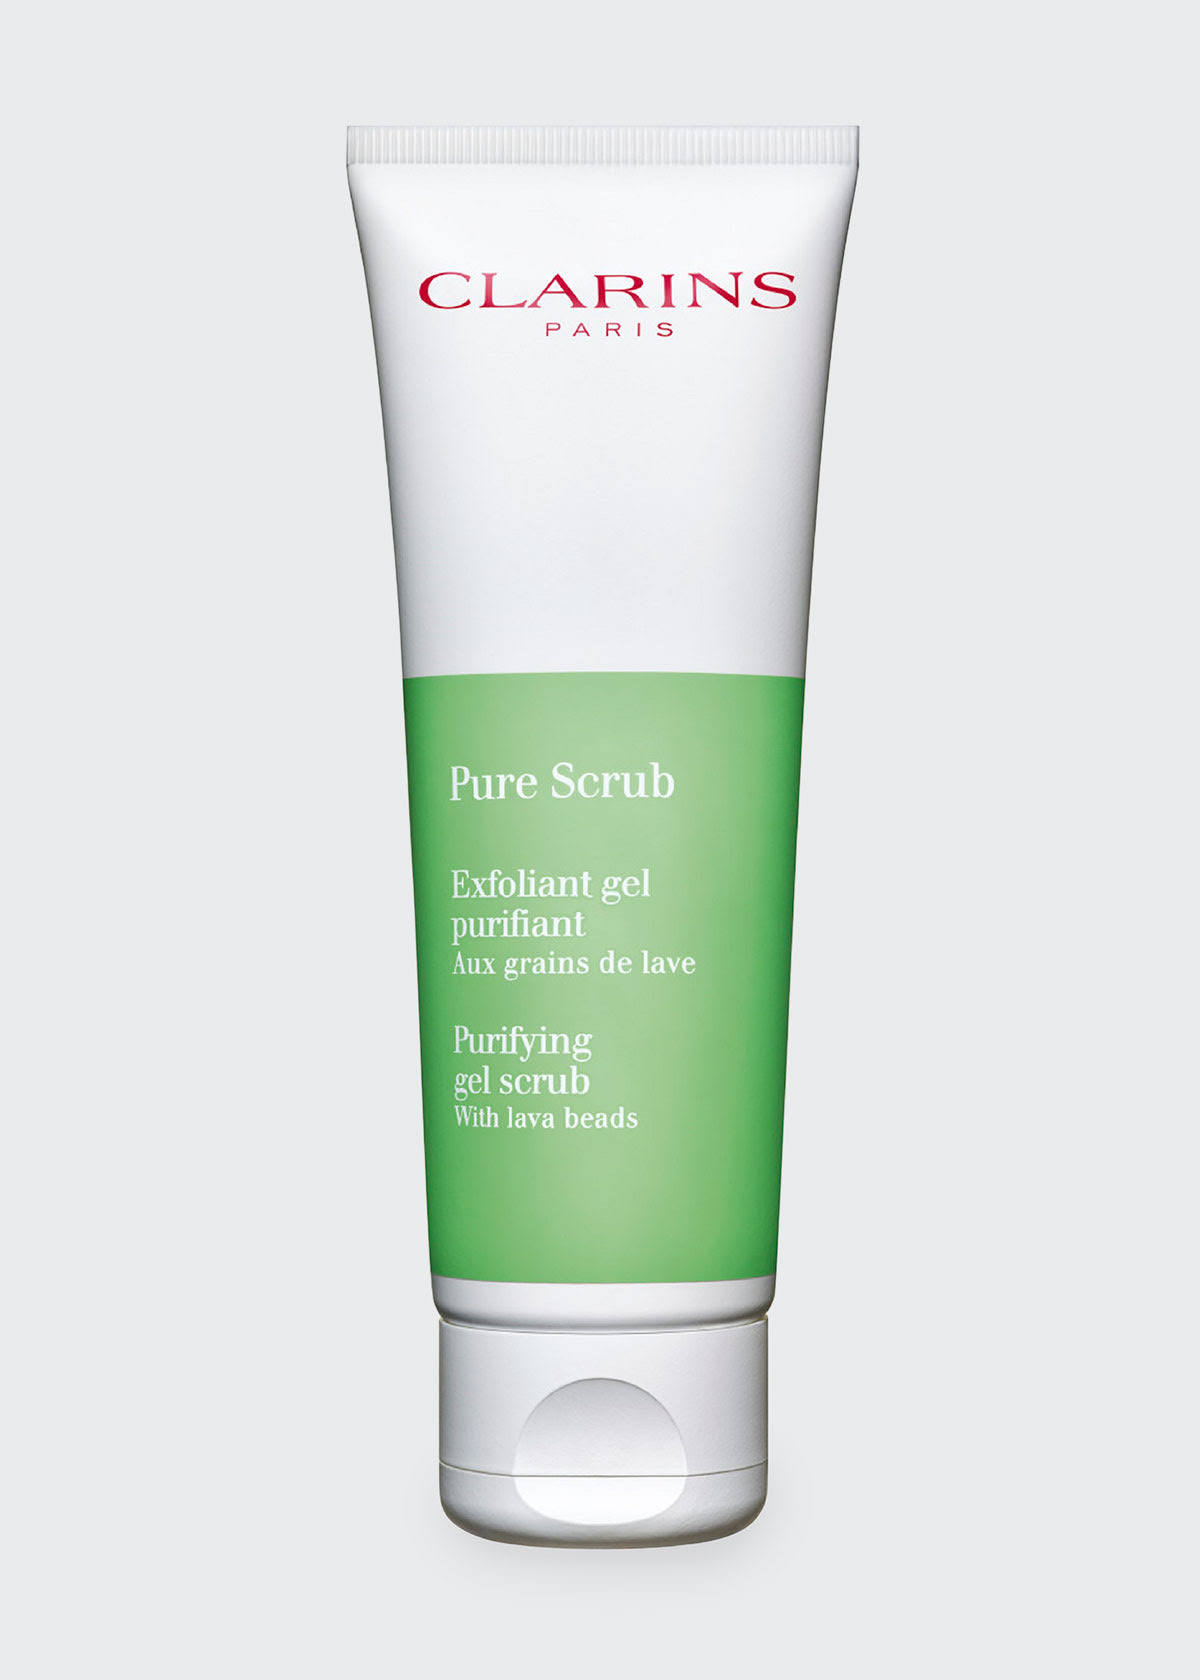 Clarins Exfoliant Gel Pure Scrub - 50ml